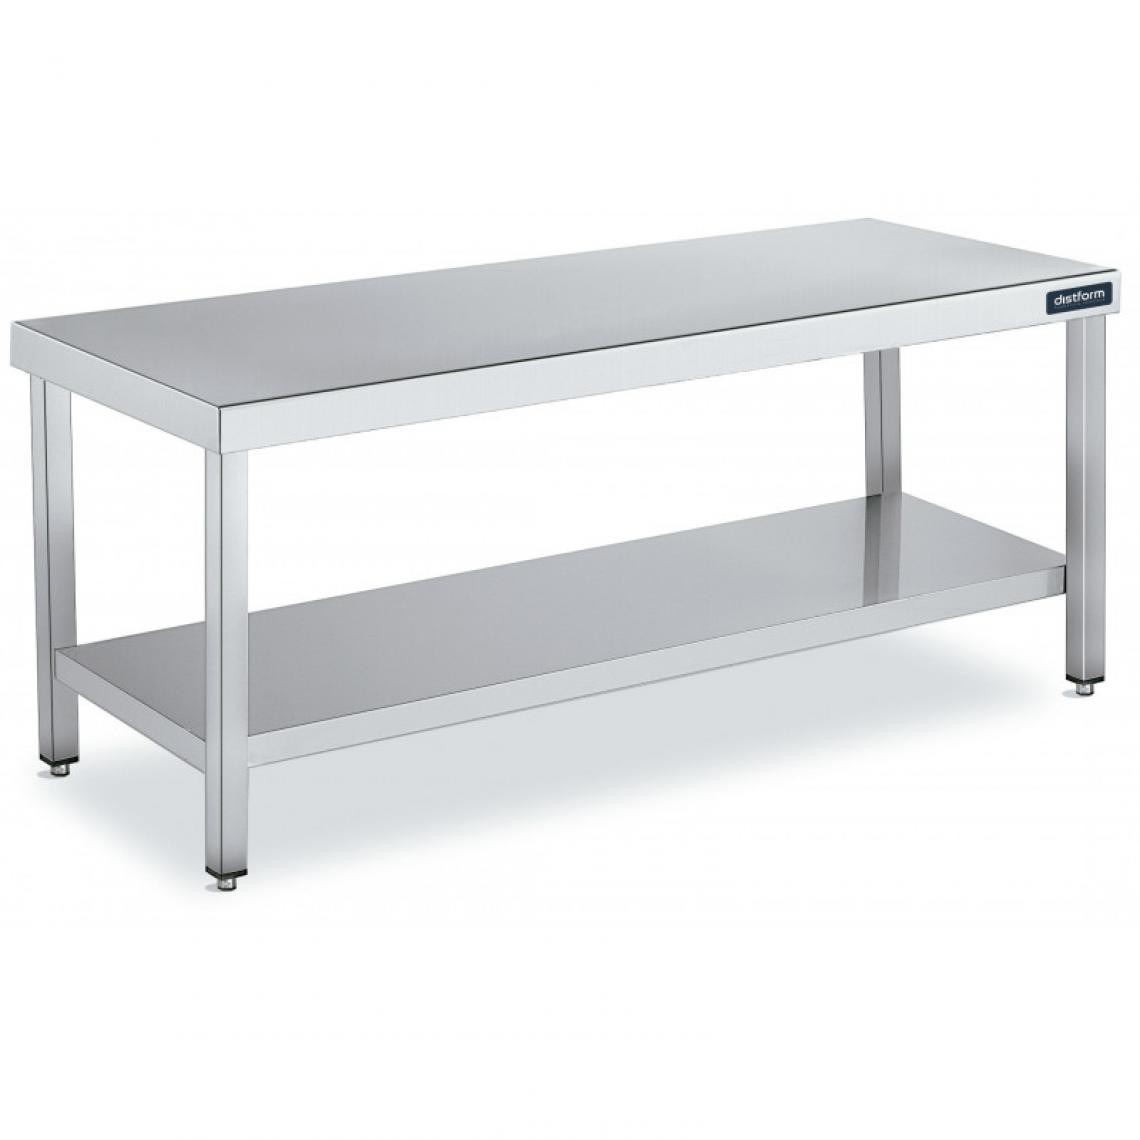 DISTFORM - Table de Travail Centrale Inox avec 1 Étagère - Gamme 600 - Hauteur 600 - Distform - Acier inoxydable600x600 - Tables à manger